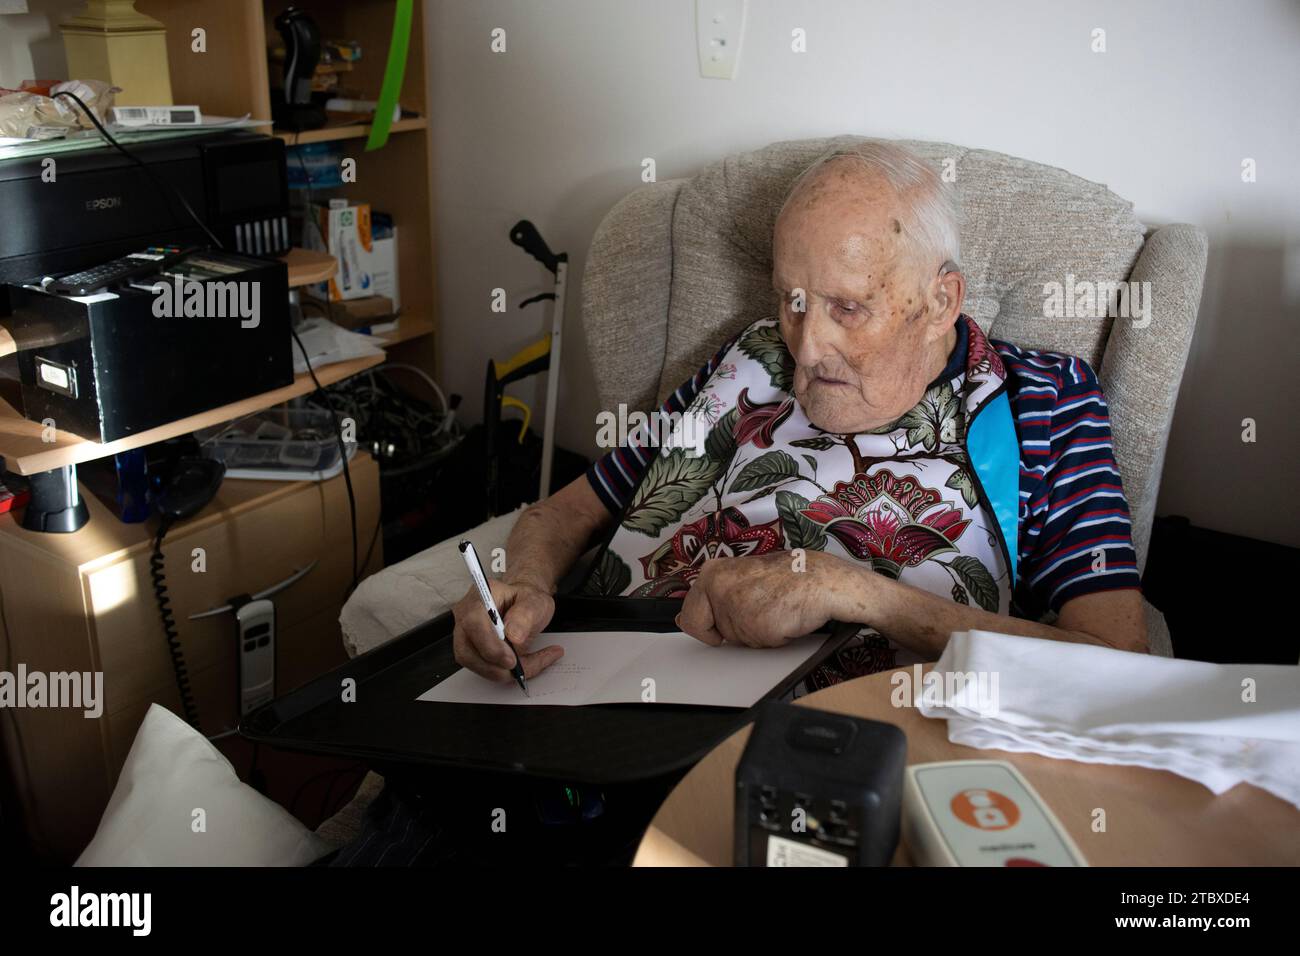 Homme âgé dans ses années 90 écrivant ses cartes de Noël à des parents avant la saison des fêtes, Angleterre, Royaume-Uni Banque D'Images